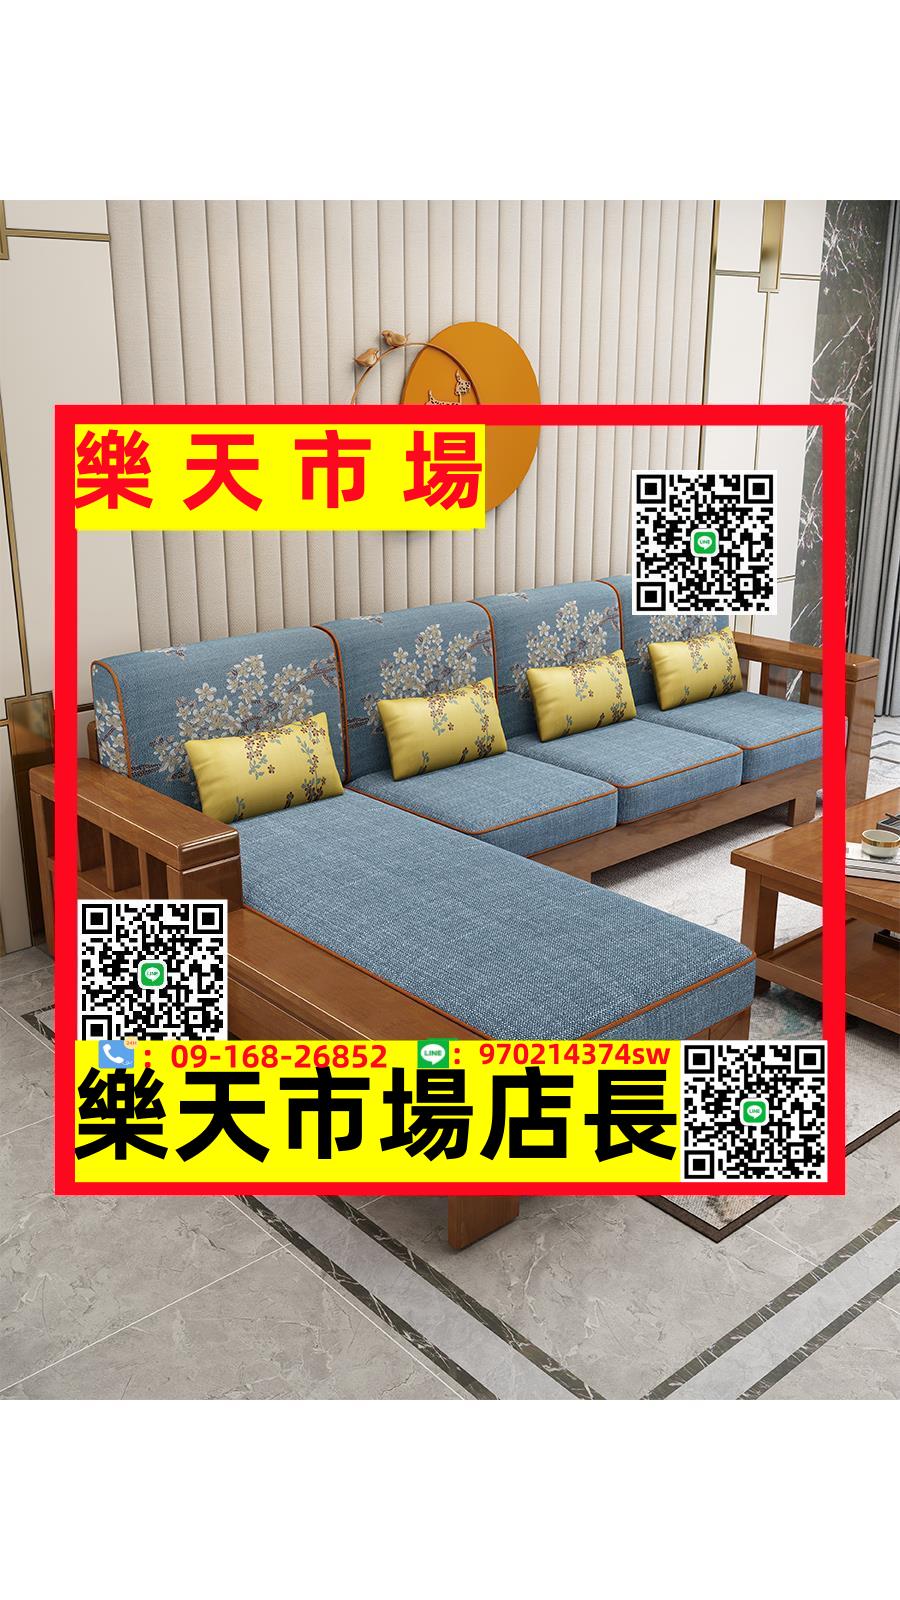 中式實木沙發全實木組合現代簡約布藝貴妃冬夏兩用小戶型客廳家具